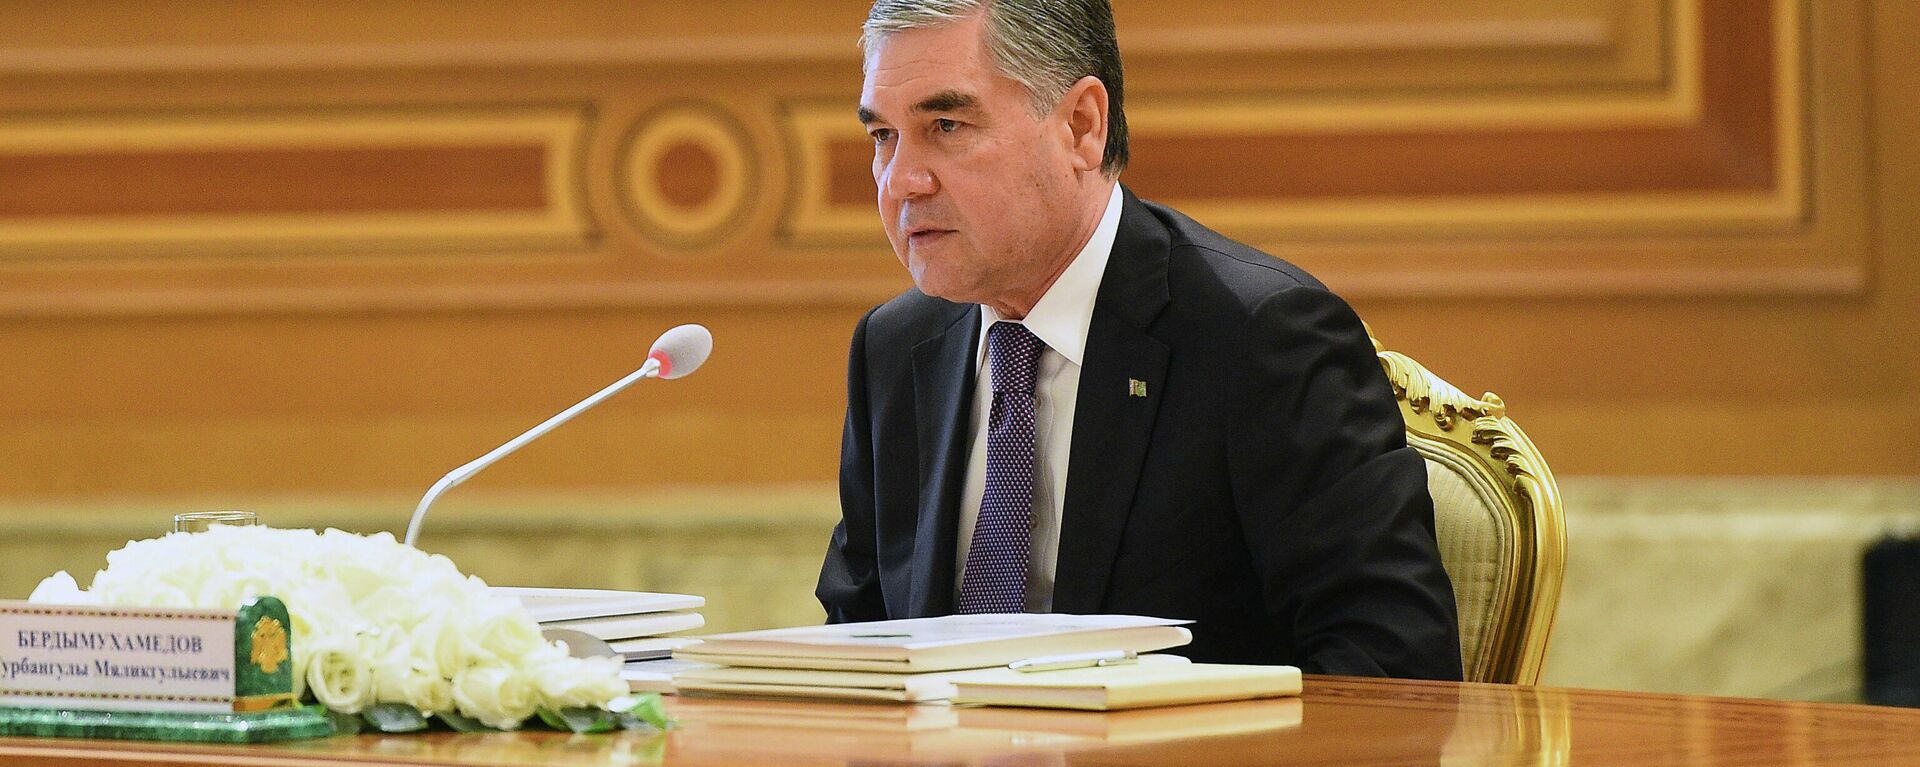 Президент Туркменистана Гурбангулы Бердымухамедов - Sputnik Таджикистан, 1920, 17.09.2021